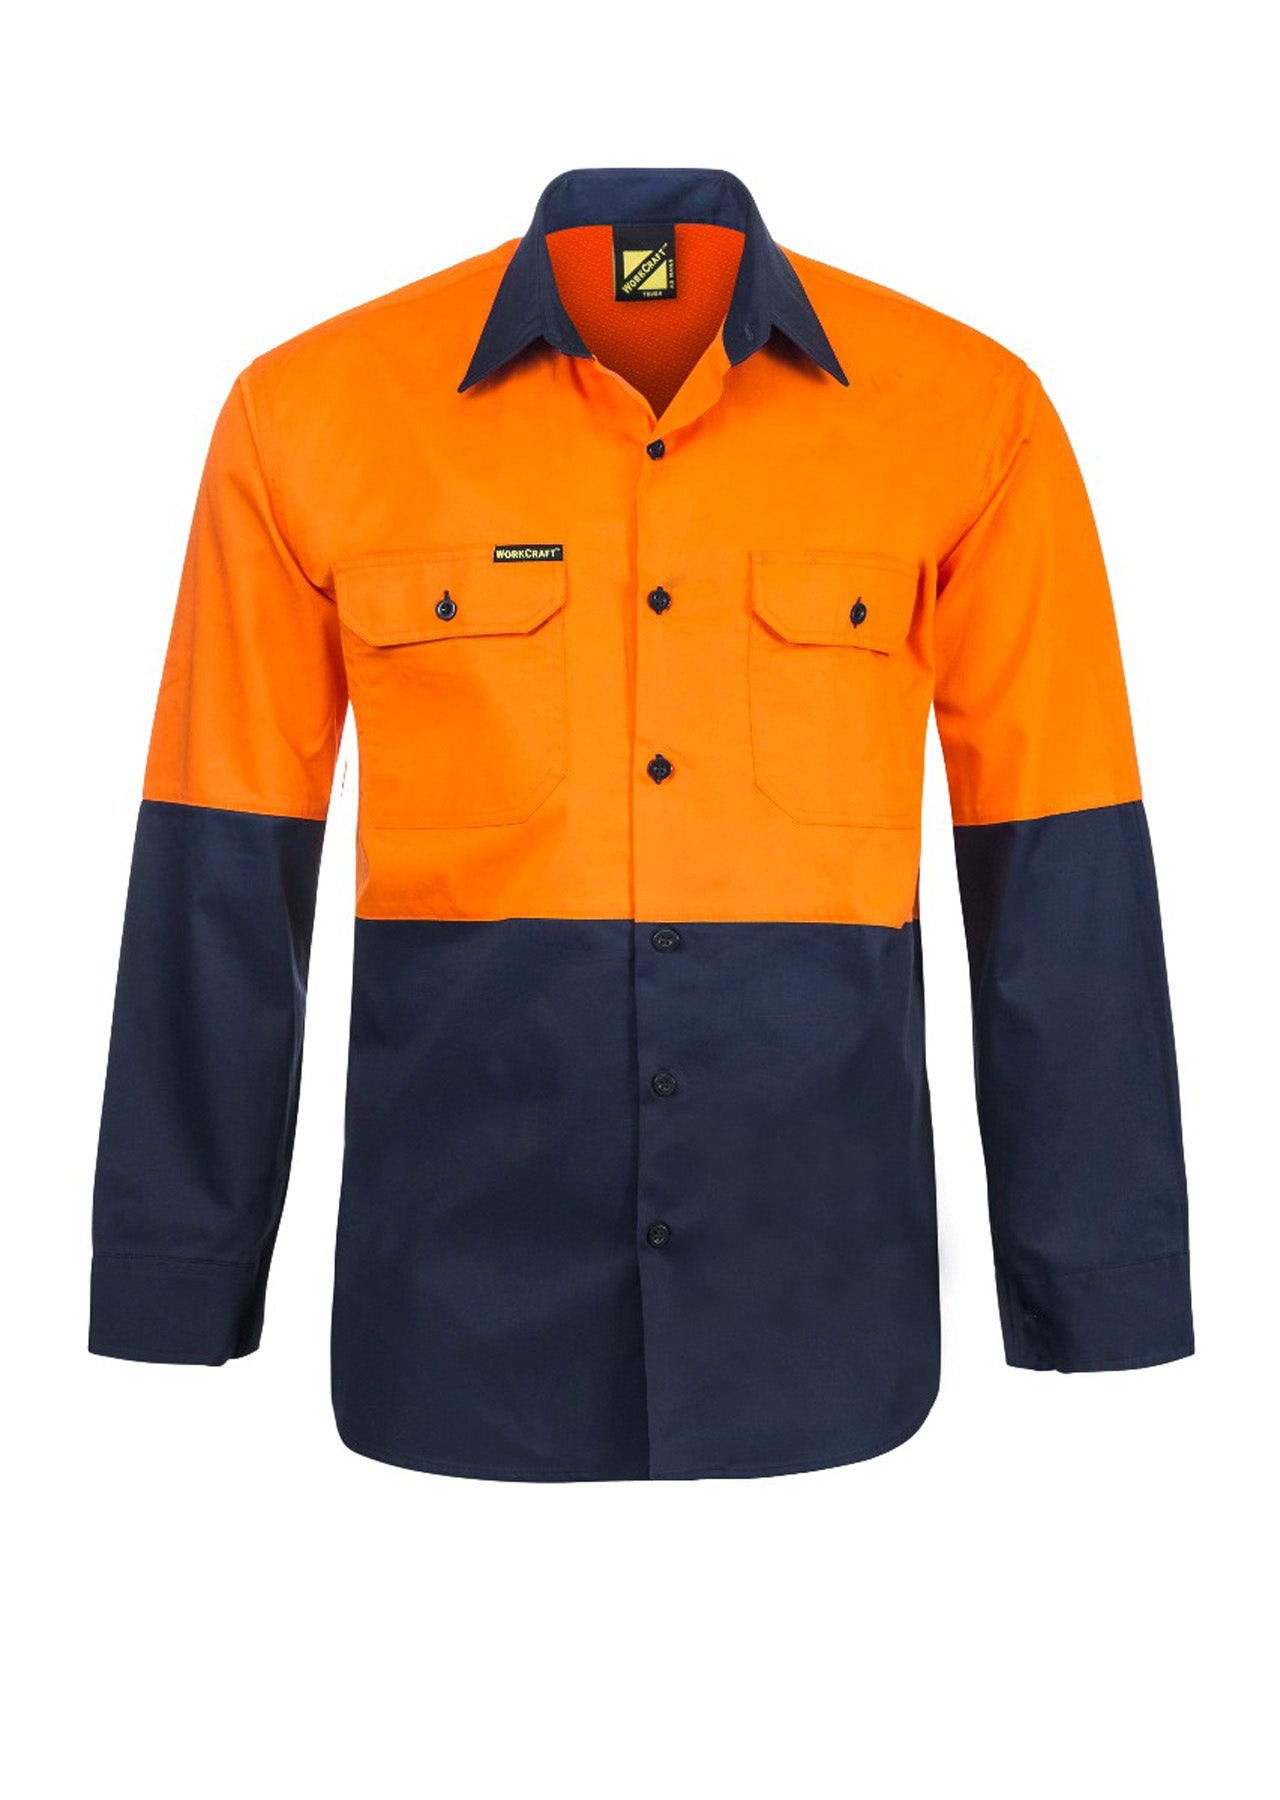 WS4247 custom vented tradie work shirt